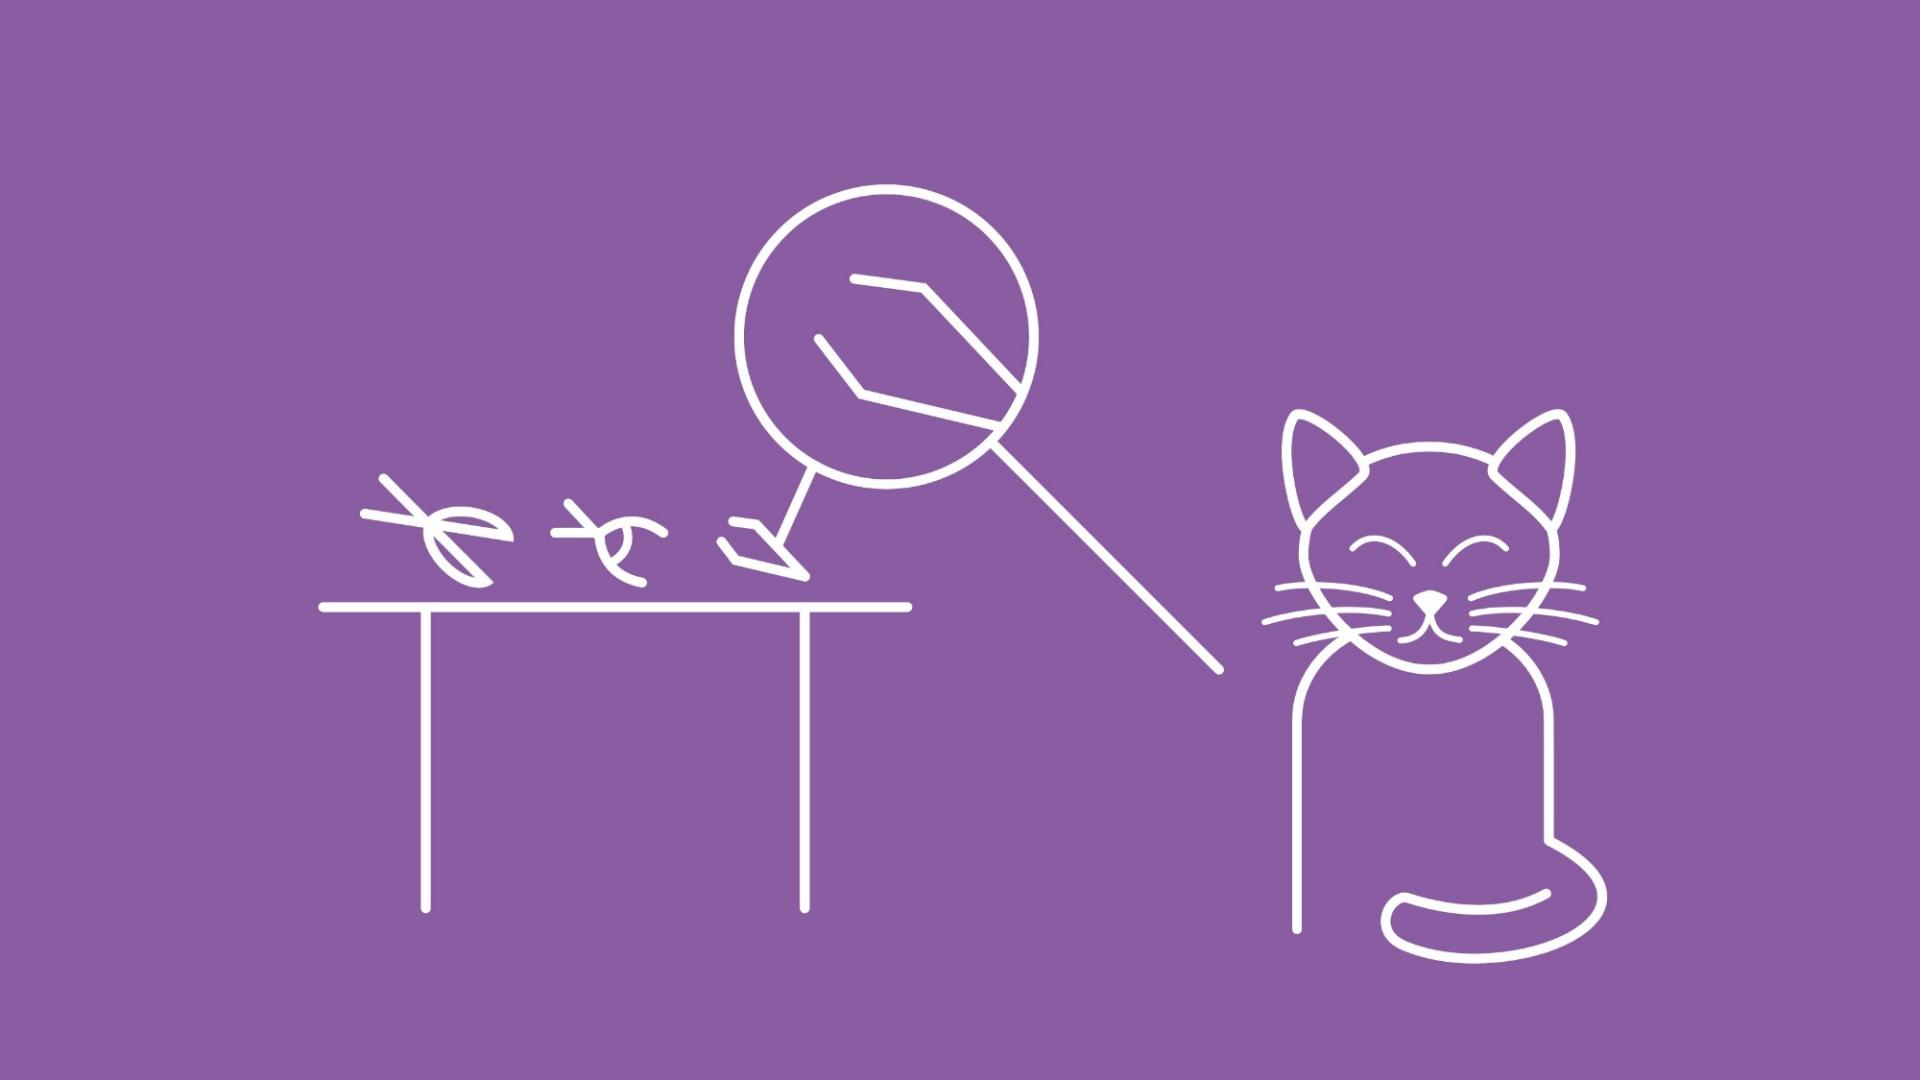 Die Grafik zeigt verschiedene Instrumente auf einem Tisch, die mit einer Lupe vergrößert dargestellt werden. Hierbei werden in Form von Icons 2-3 geeignete Utensilien zum Schneiden der Krallen gezeigt. Neben den Utensilien auf dem Tisch sitzt eine Katze.